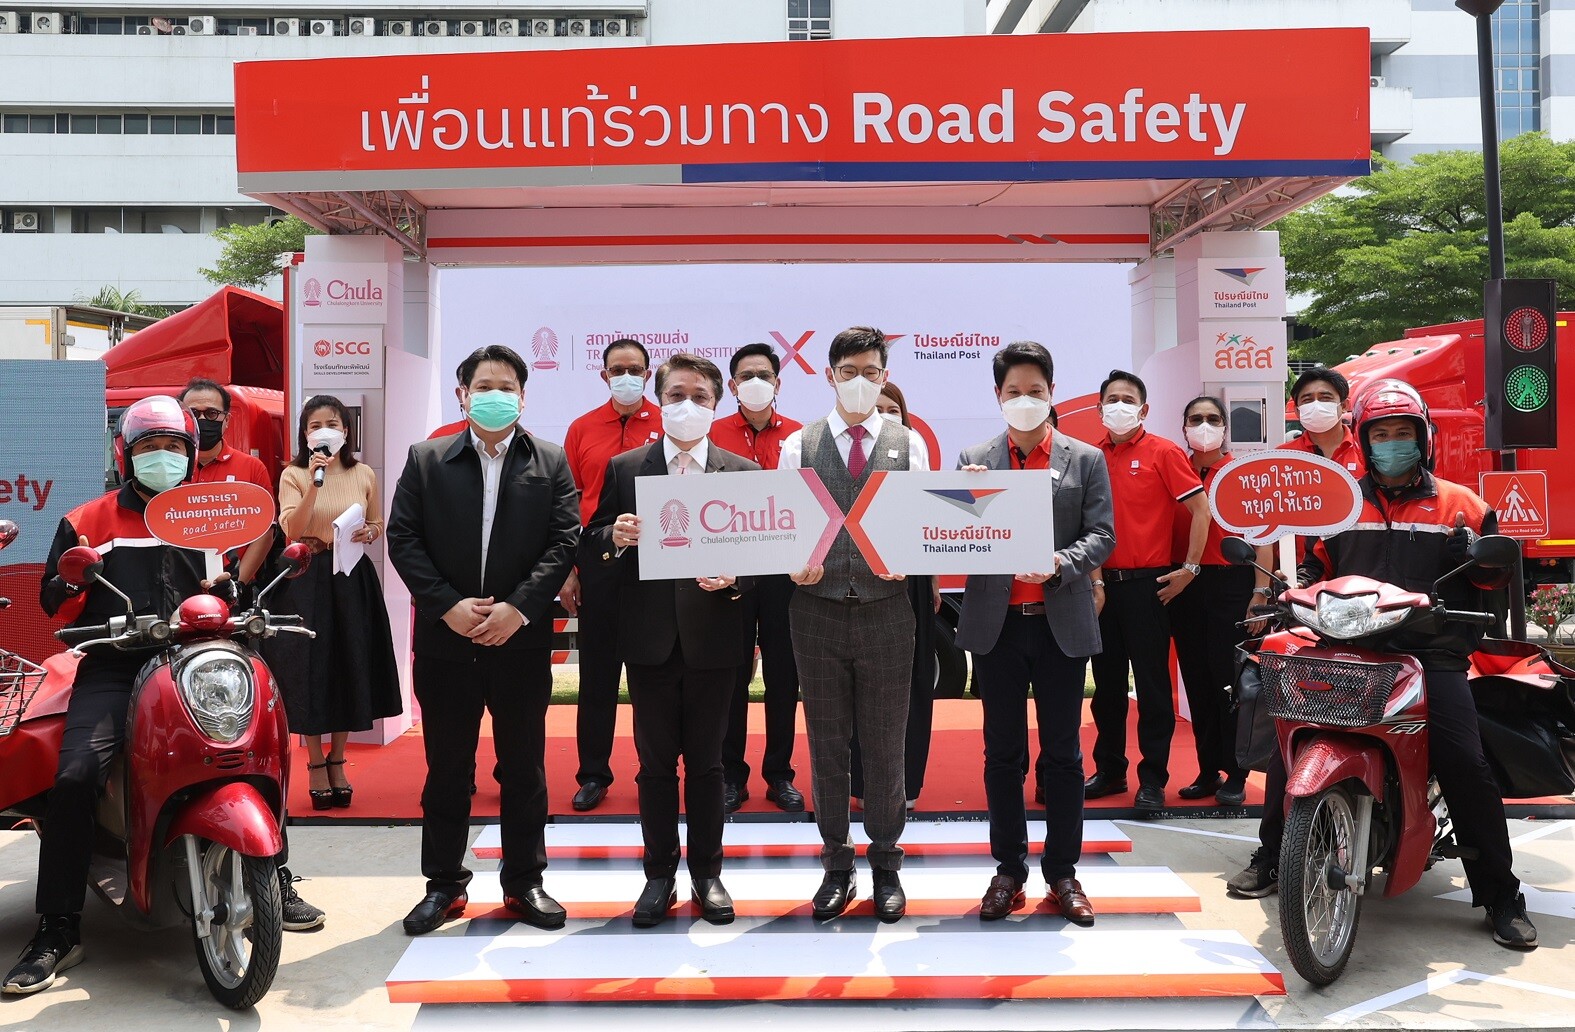 ไปรษณีย์ไทย และ จุฬาฯ เปิดโครงการ "เพื่อนแท้ร่วมทาง Road Safety" ดันบุรุษไปรษณีย์ 20,000 คน นำจ่ายปลอดภัยทุกเส้นทาง พร้อมเป็นต้นแบบและบอกต่อวินัยจราจรผู้ร่วมทาง 200,000 คน